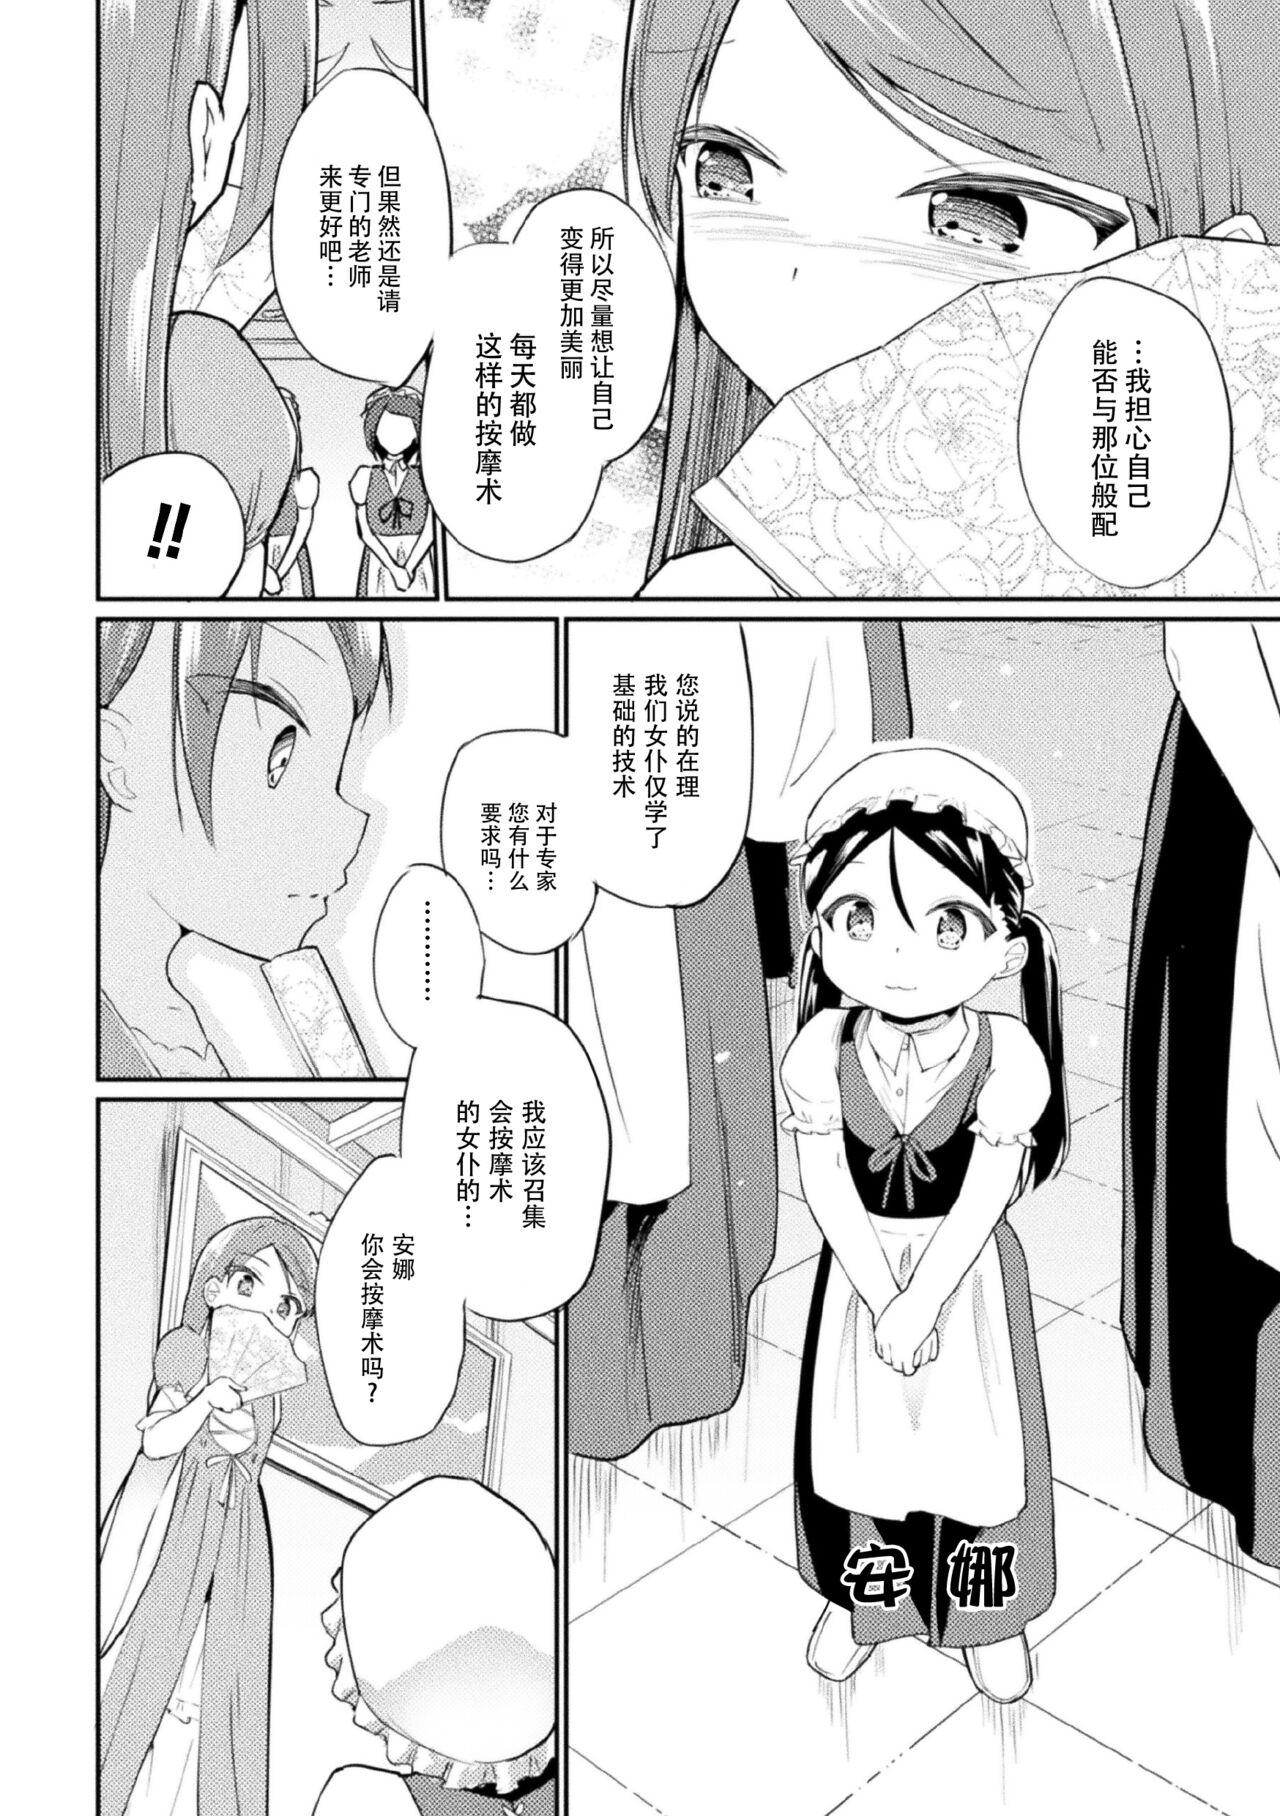 Gordita Youjou no maede onanisuru watashi【Dokiki汉化组】 Anime - Page 2